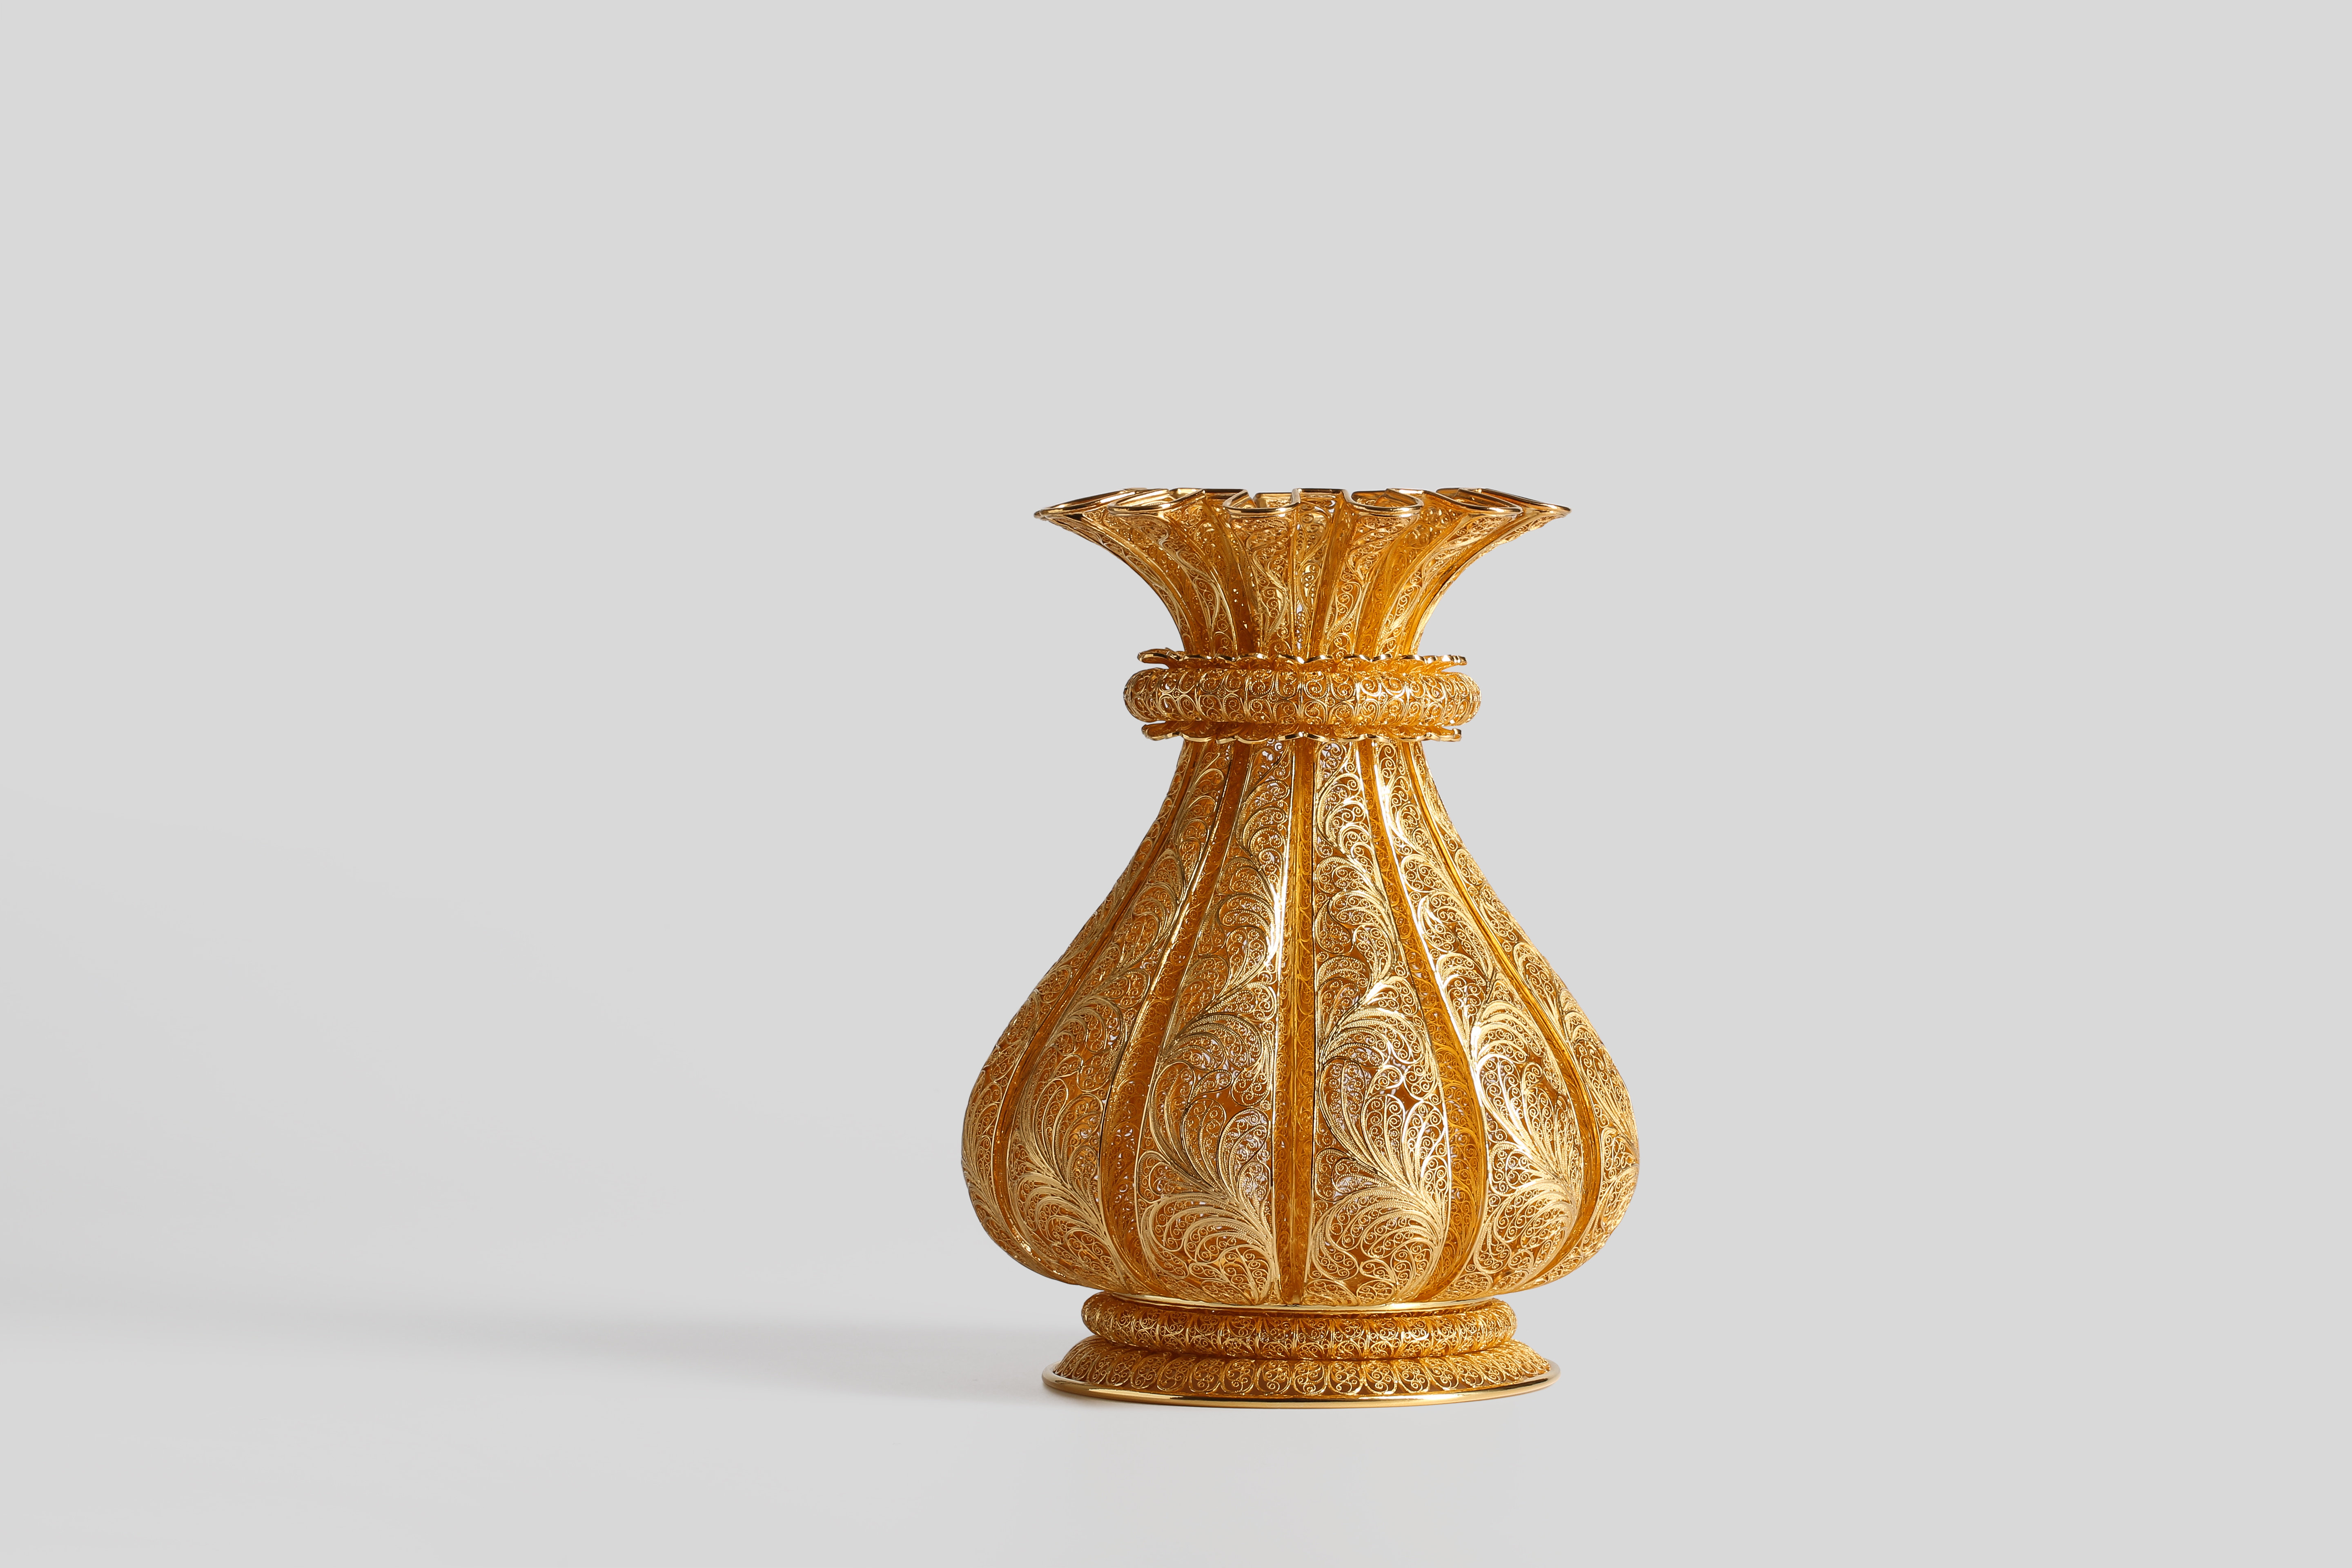 铜丝编织花瓶图片